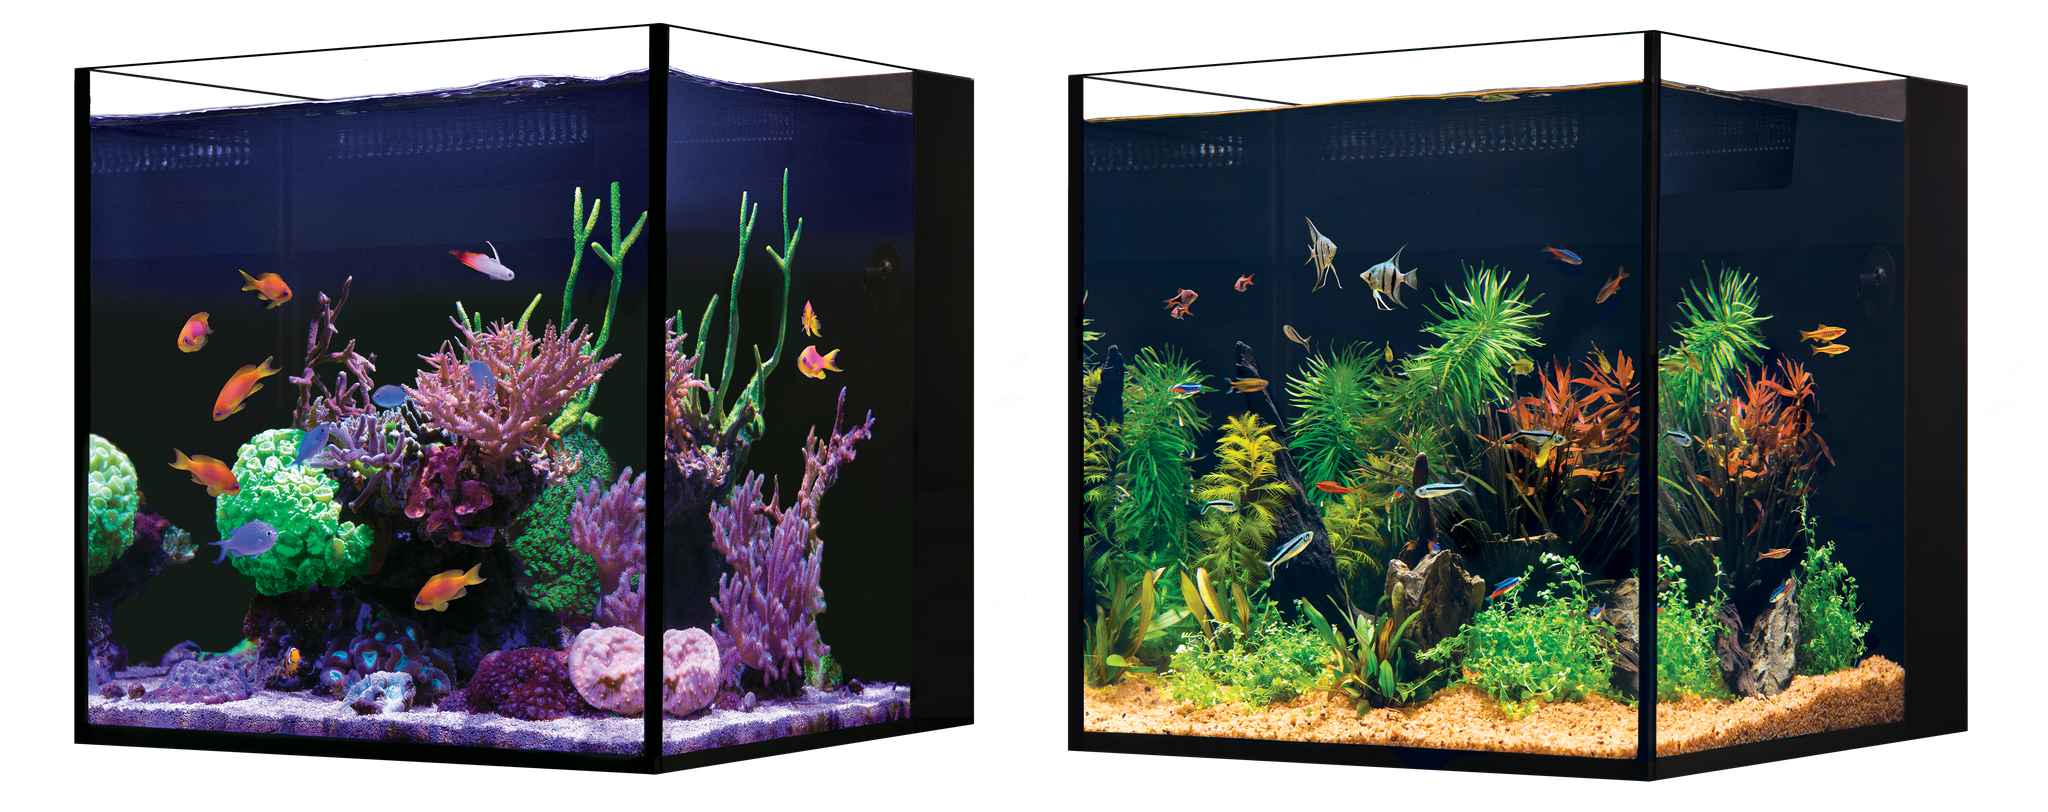 Red Sea Desktop Cube Aquarium Only